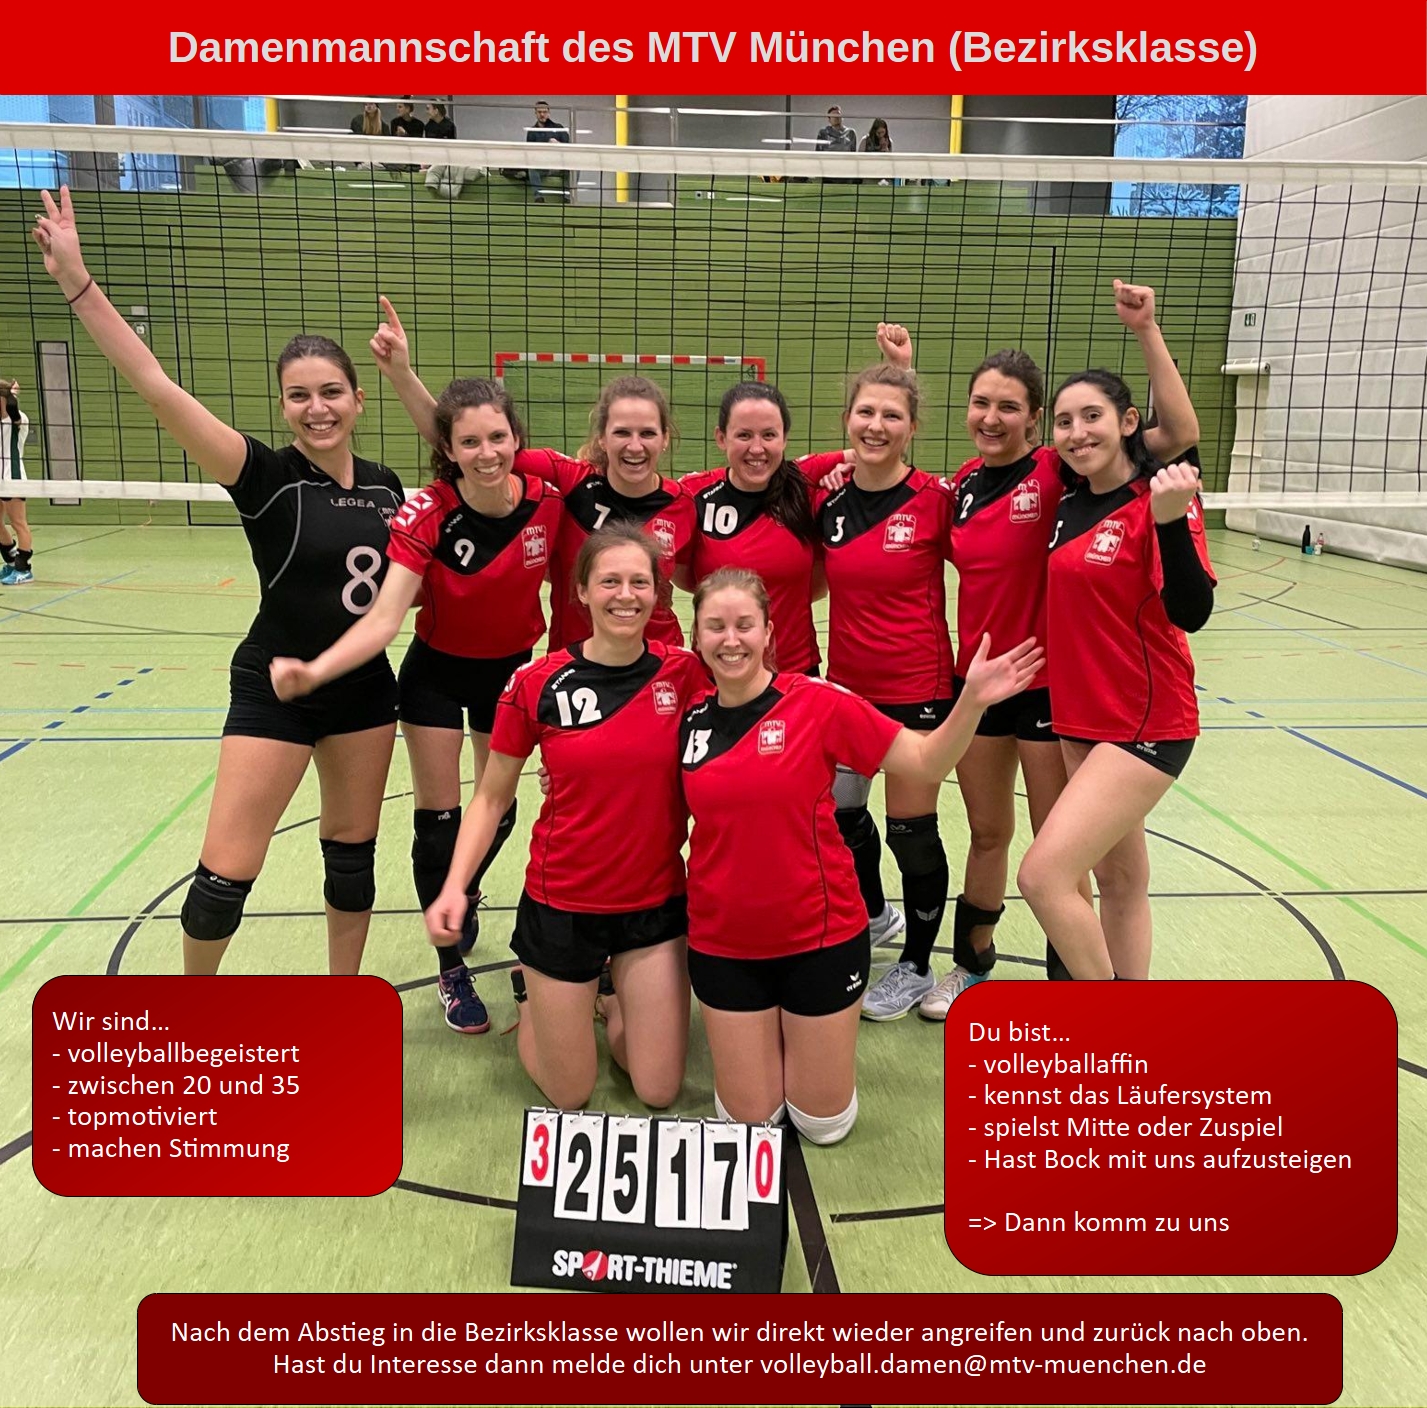 Unsere Damen suchen für die Saison 2023/24 neue Spielerinnen. Wenn du Lust hast, dann melde dich bei volleyball.damen@mtv-muenchen.de